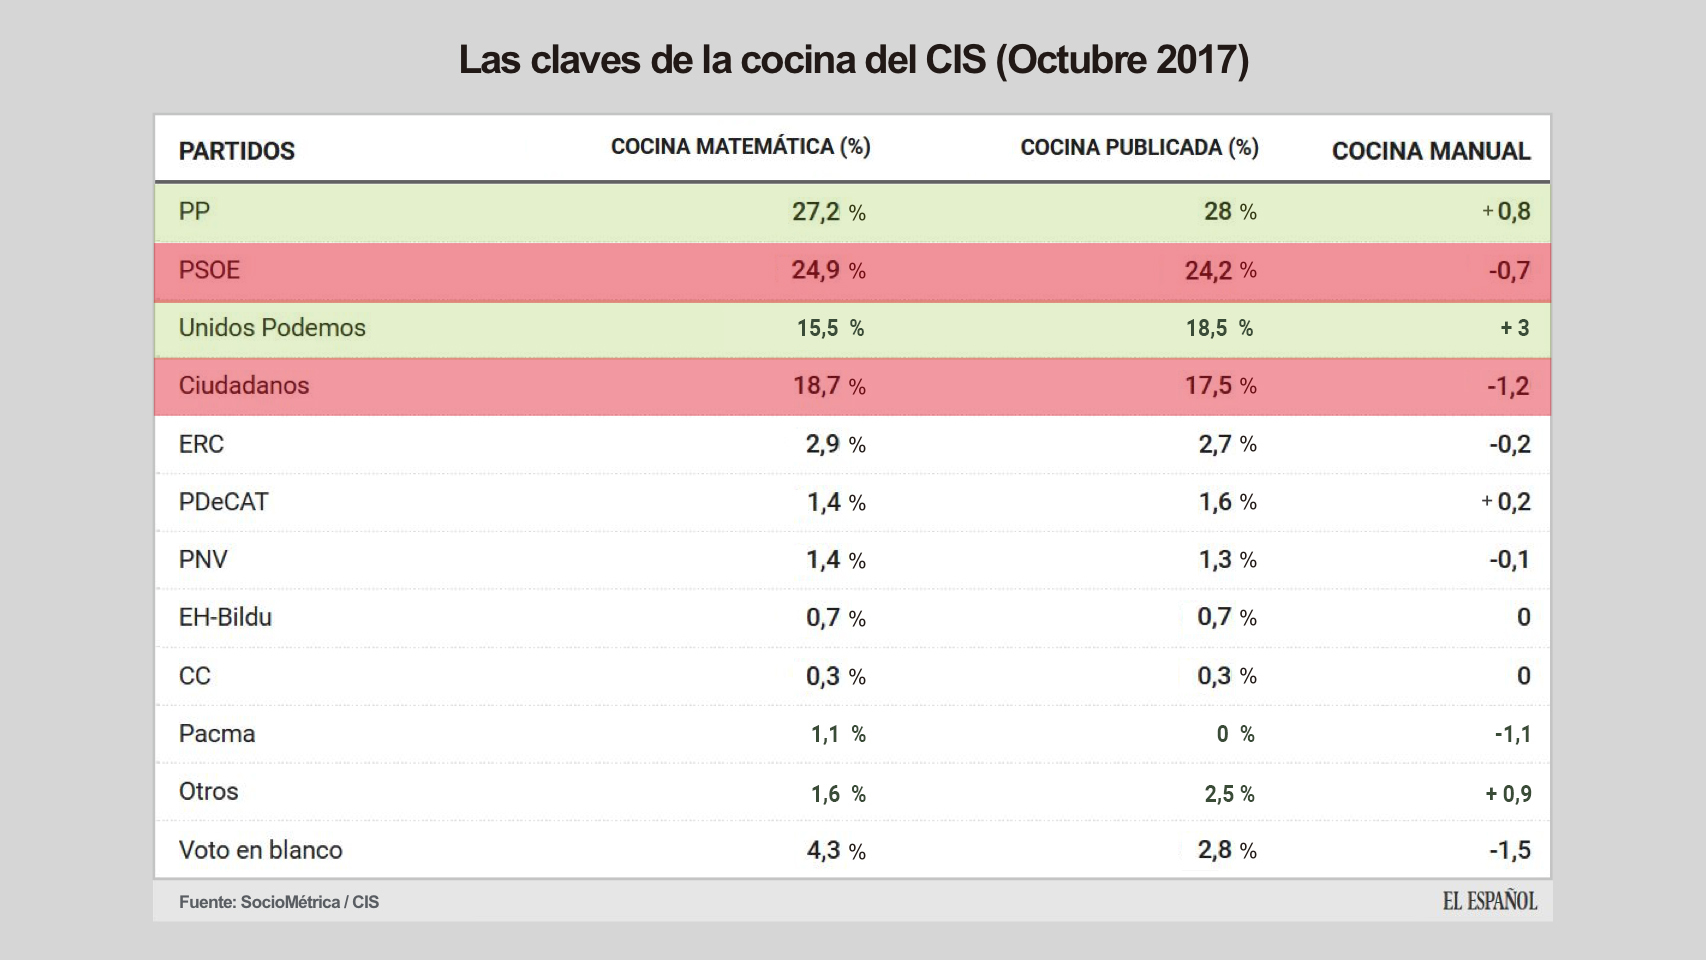 La cocina manual del CIS  beneficia a Podemos y PP y perjudica a Cs y PSOE